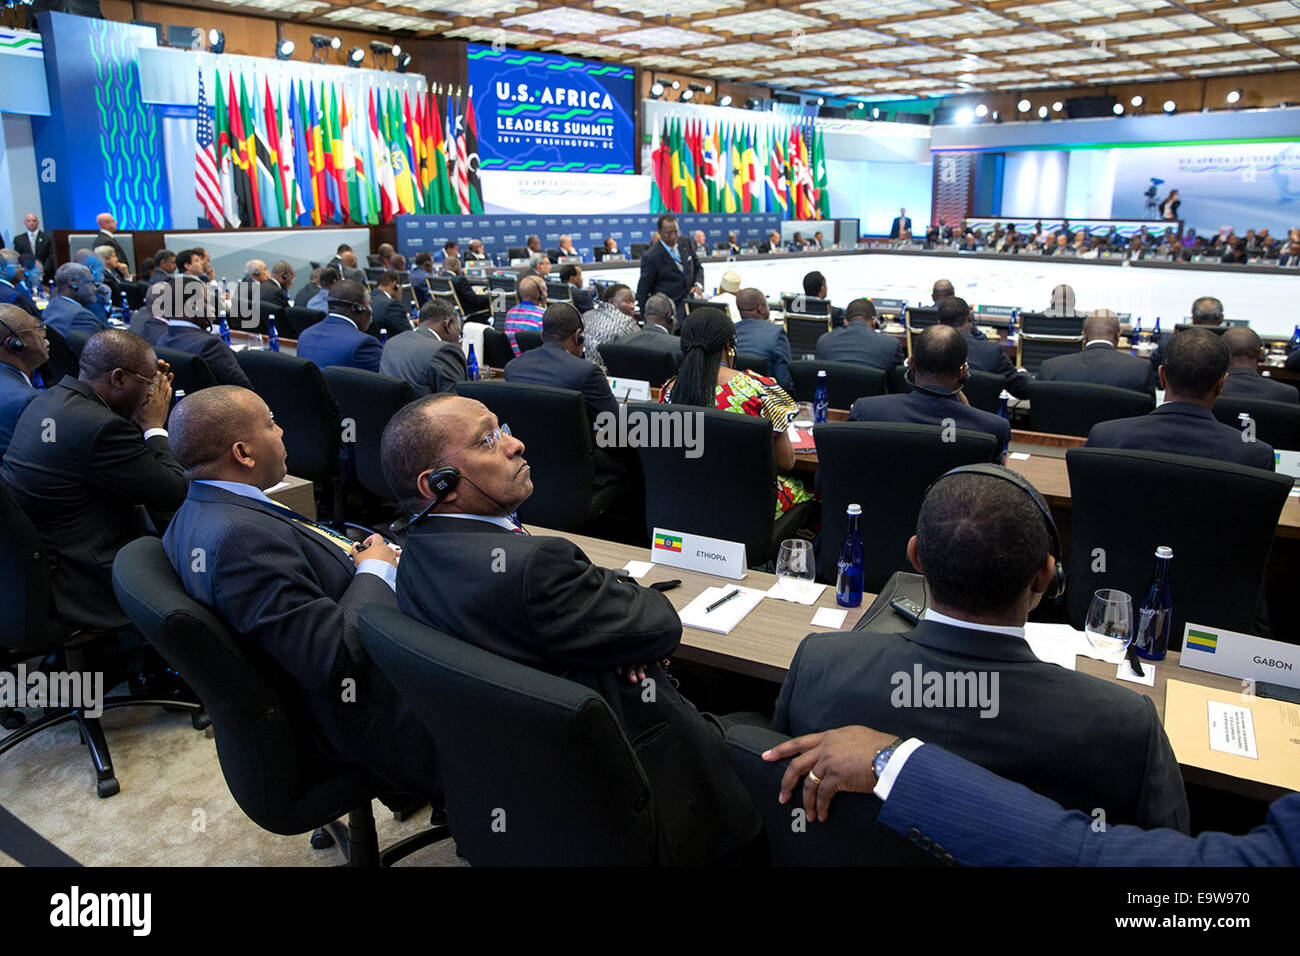 Afrikanische Führer hören, wie Präsident Barack Obama während der U.S.-Afrika Leaders Summit im US-Außenministerium in Washington, D.C., 6. August 2014 Hinweise liefert. PH Stockfoto